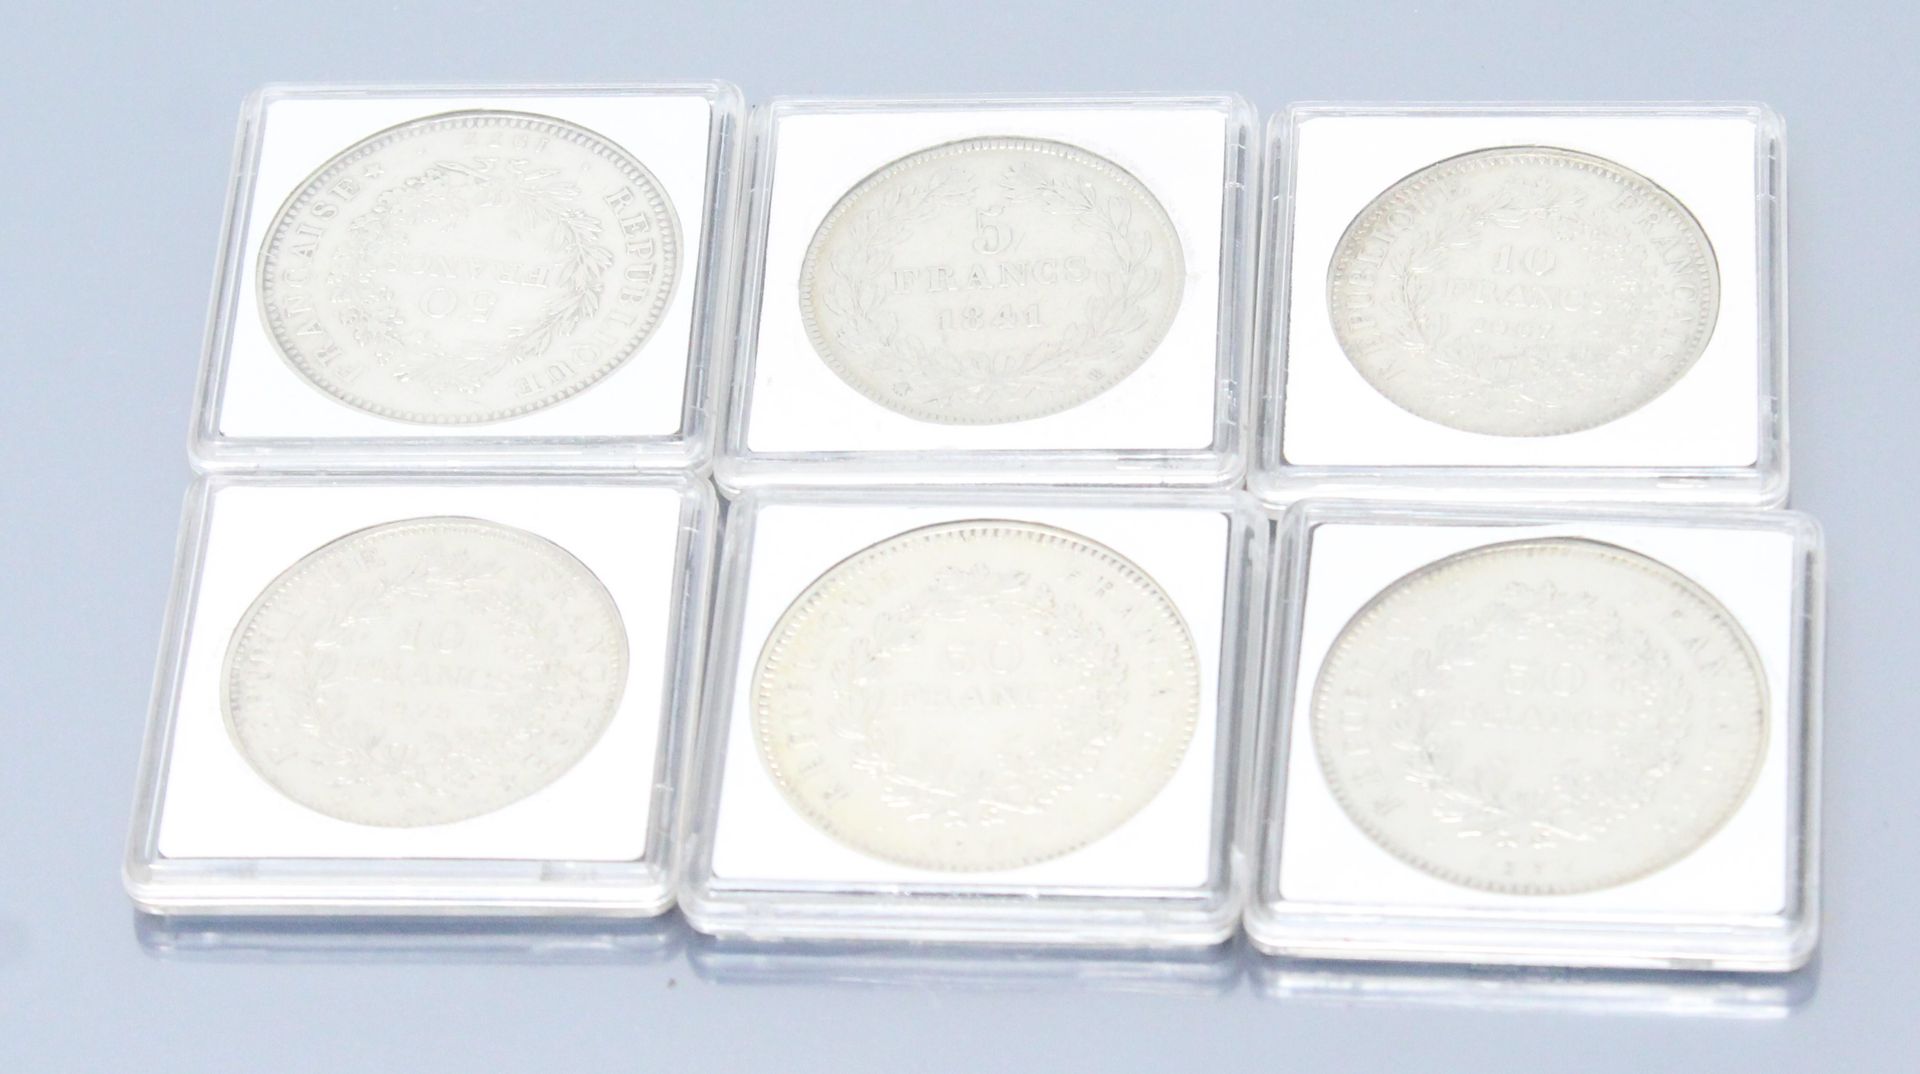 Null 一套海格力斯型银币。

- 5 F 路易-菲利普一世 1841 BB (斯特拉斯堡工作室)

- 10 F 1967 (x1) - 1972 (x1)&hellip;